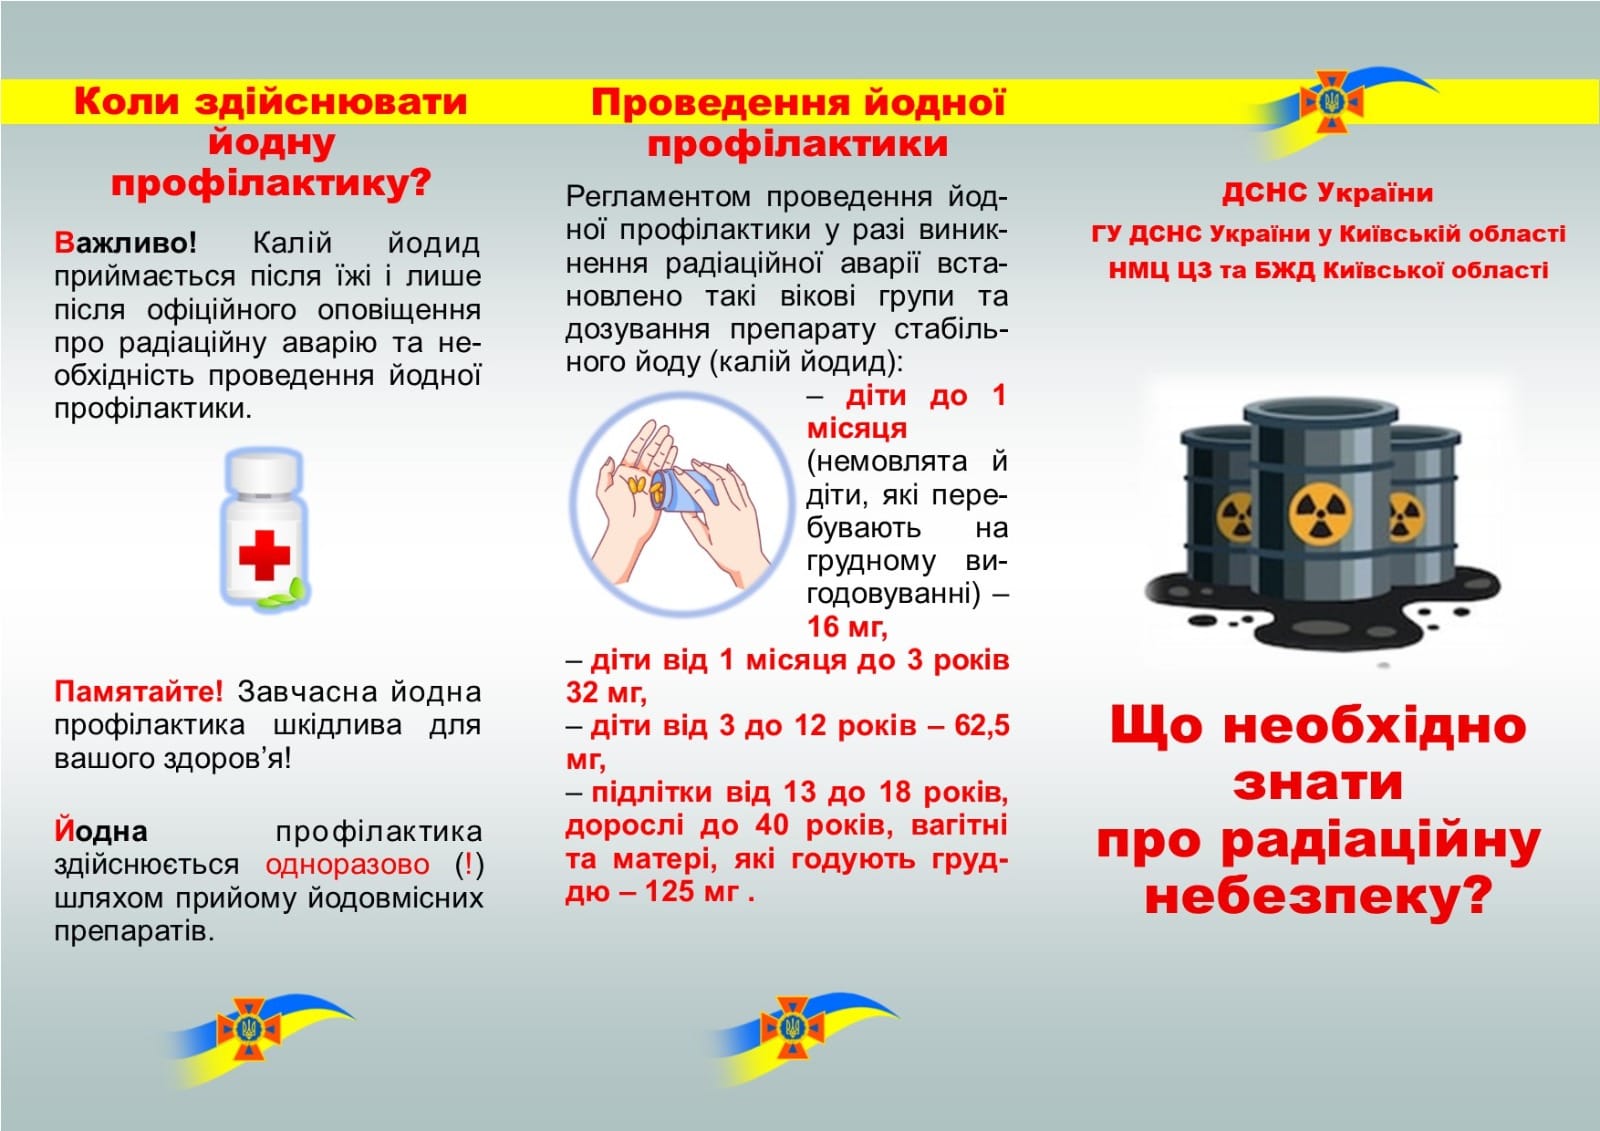 Інфографіки від ГУ ДСНС України у Київській області щодо дій при радіаційній небезпеці